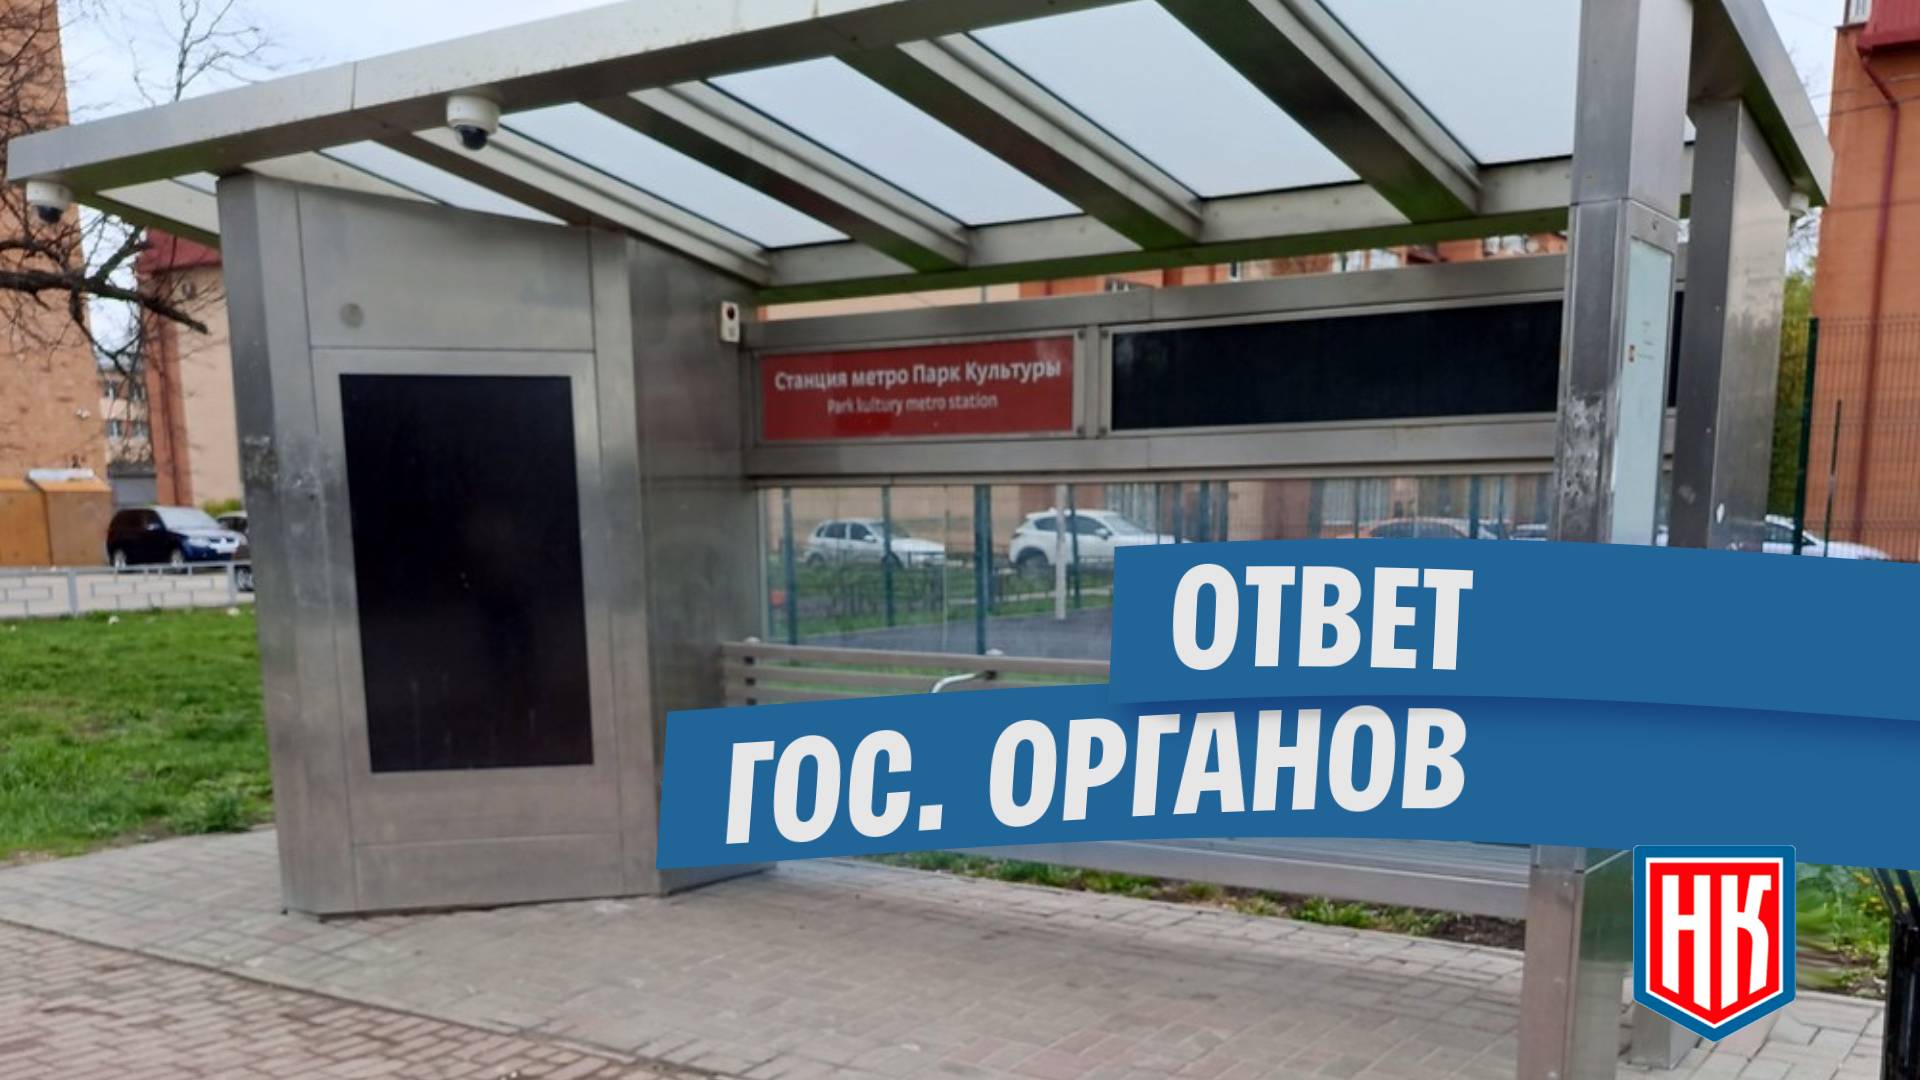 Ответ по неработающим “умным” остановкам в Нижнем Новгороде